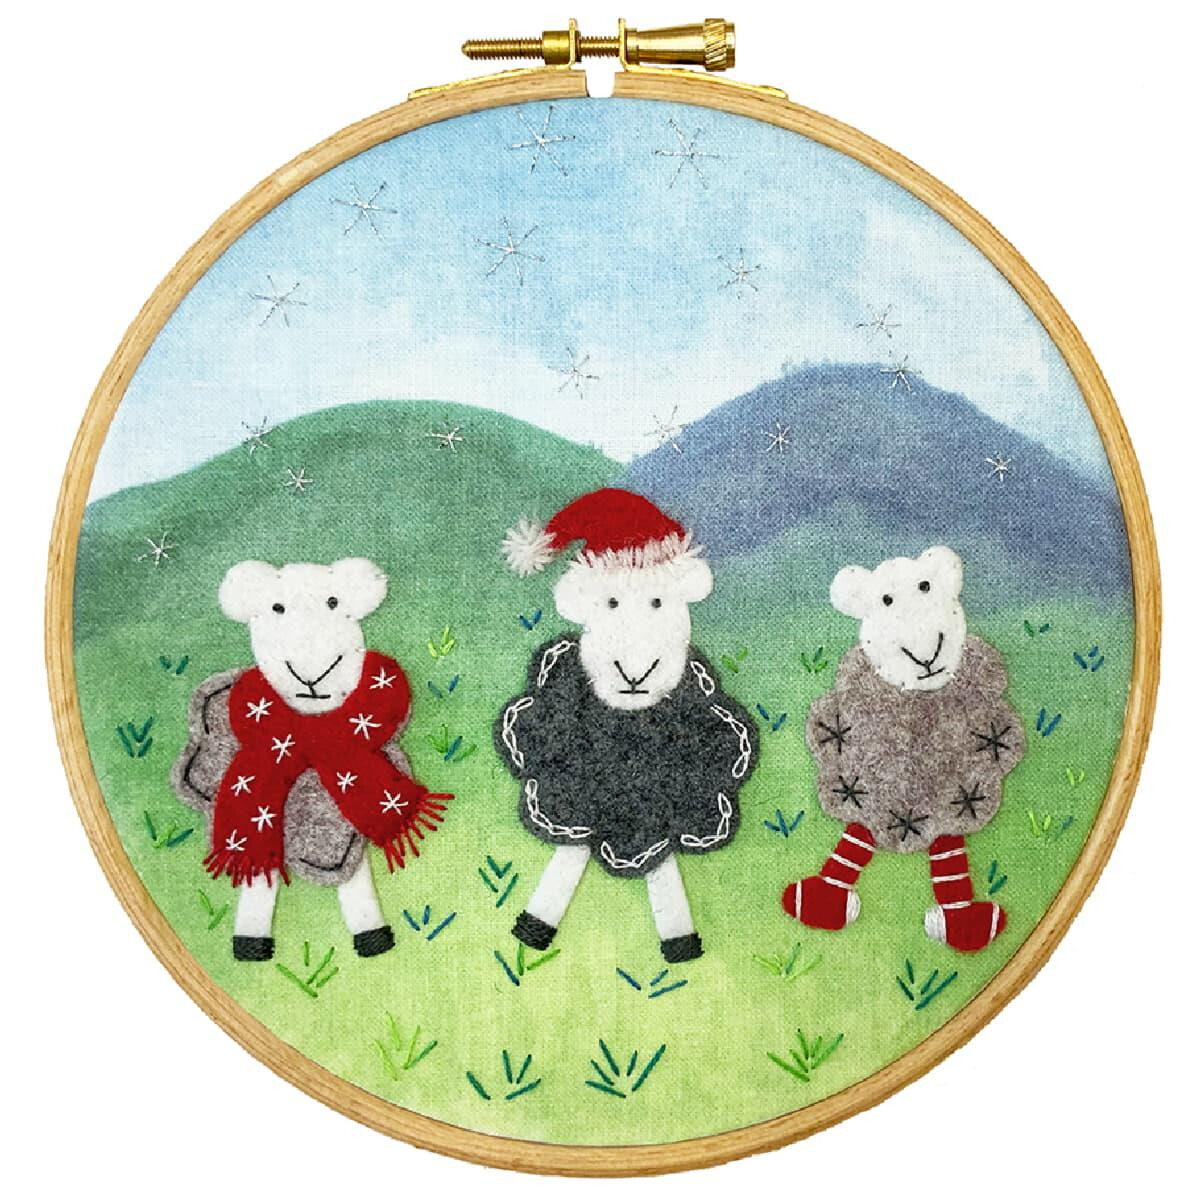 В рамке для вышивки изображены три овечки на фоне...